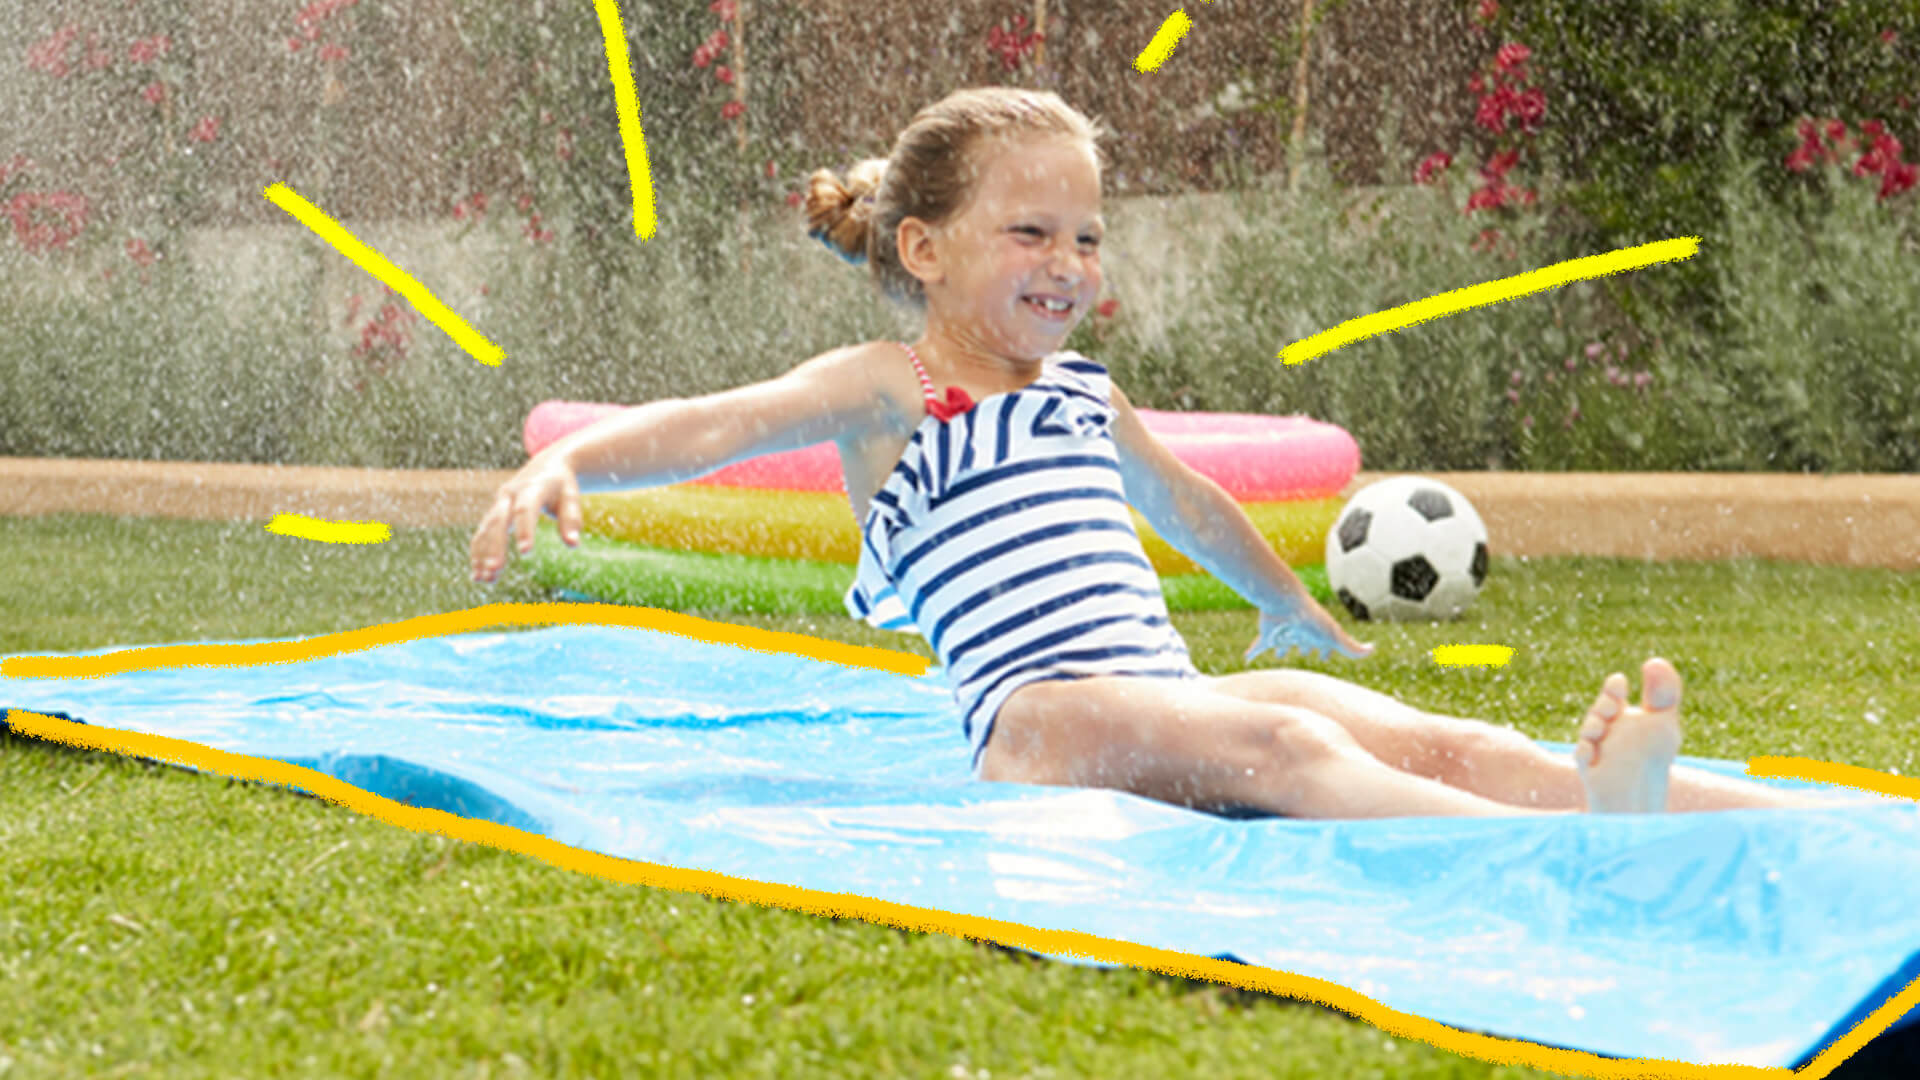 Na foto, uma menina de pele clara usa um maiô e está sentada em um plástico, com água caindo sob ela.